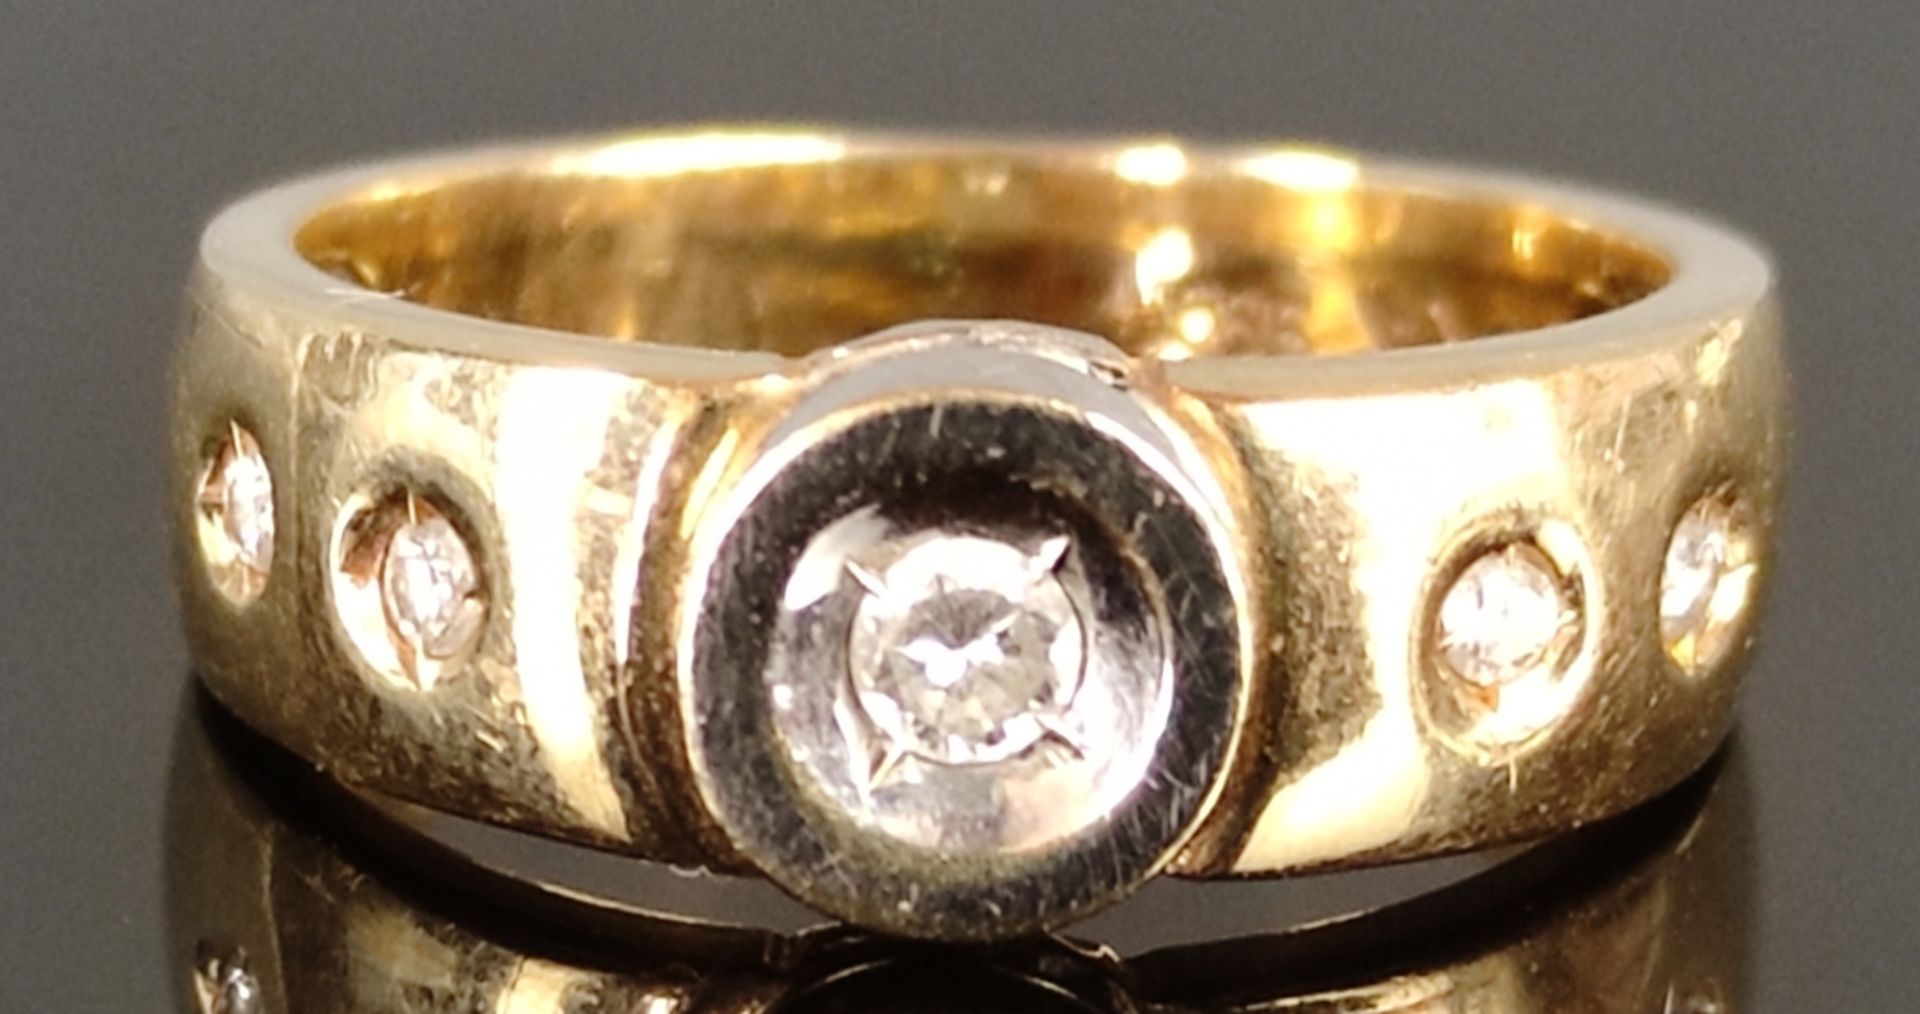 Brillant-Ring, mit 5 kleinen Brillanten, 585/14K Gelb- und Weißgold, 4,2g, Ringgröße 51 - Bild 2 aus 4